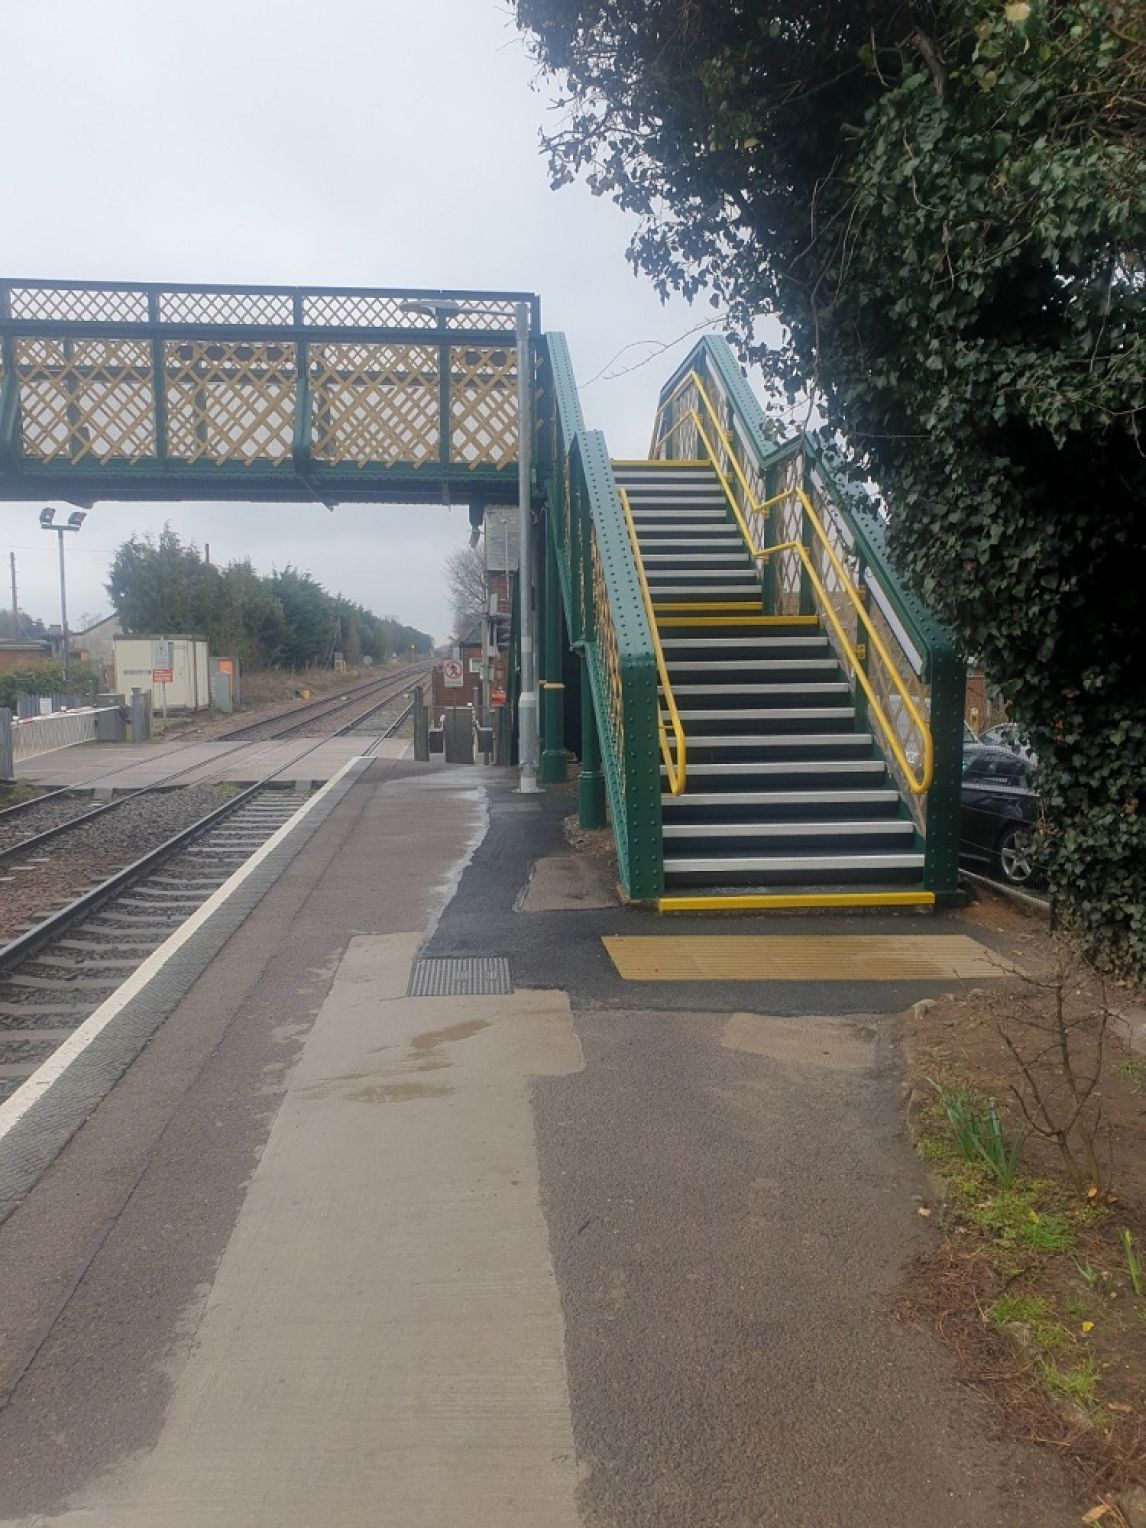 Trimley station bridge undergoing improvement works 